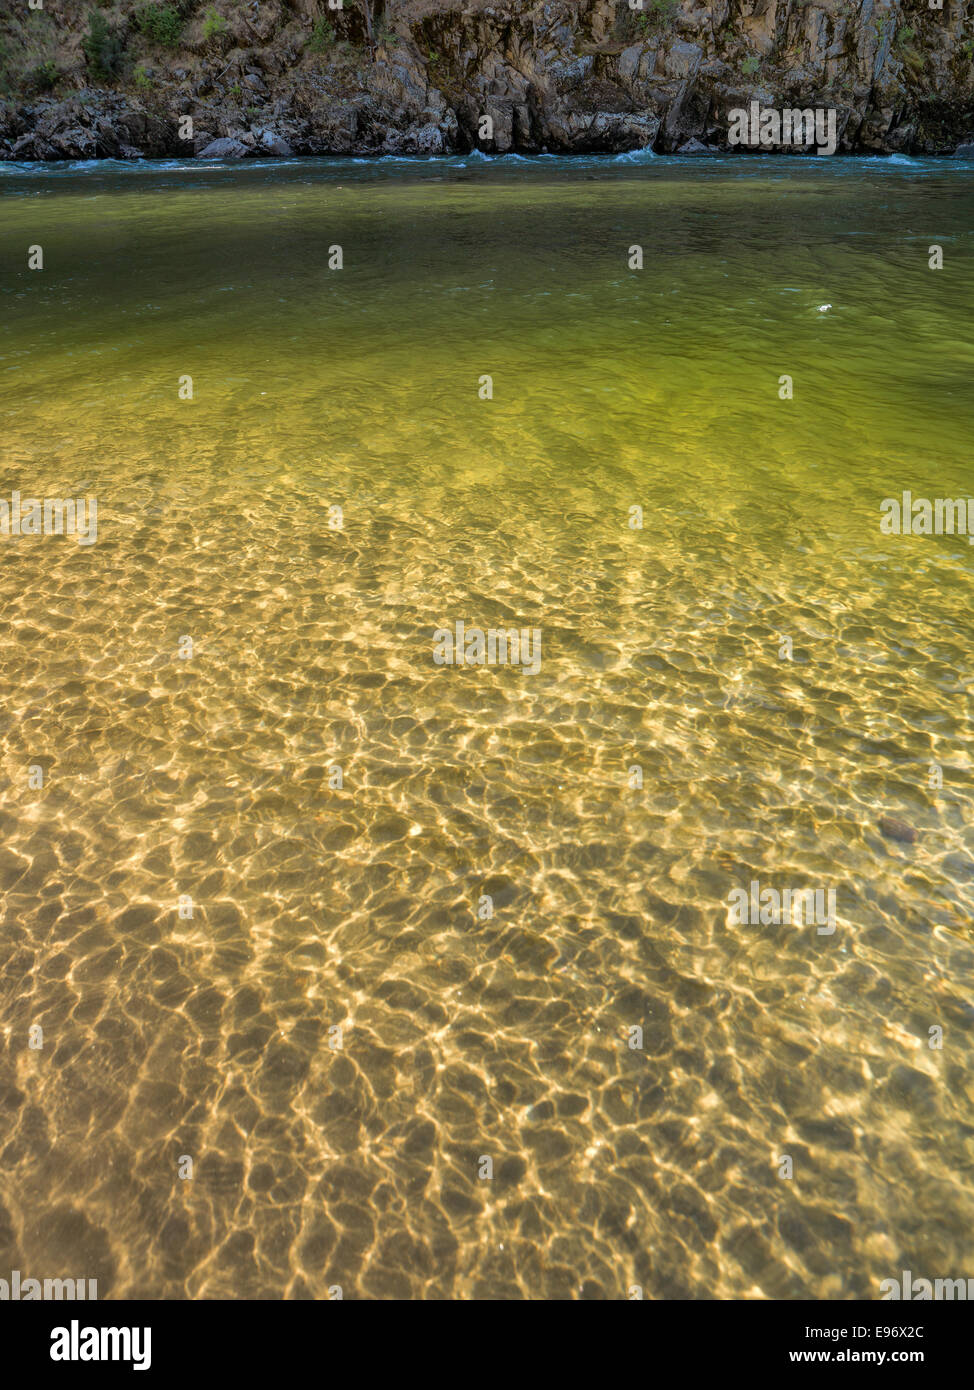 Luce dorata si riflette sul litorale lontano attraverso il fiume da salmone dall'osso T Camp. Foto Stock